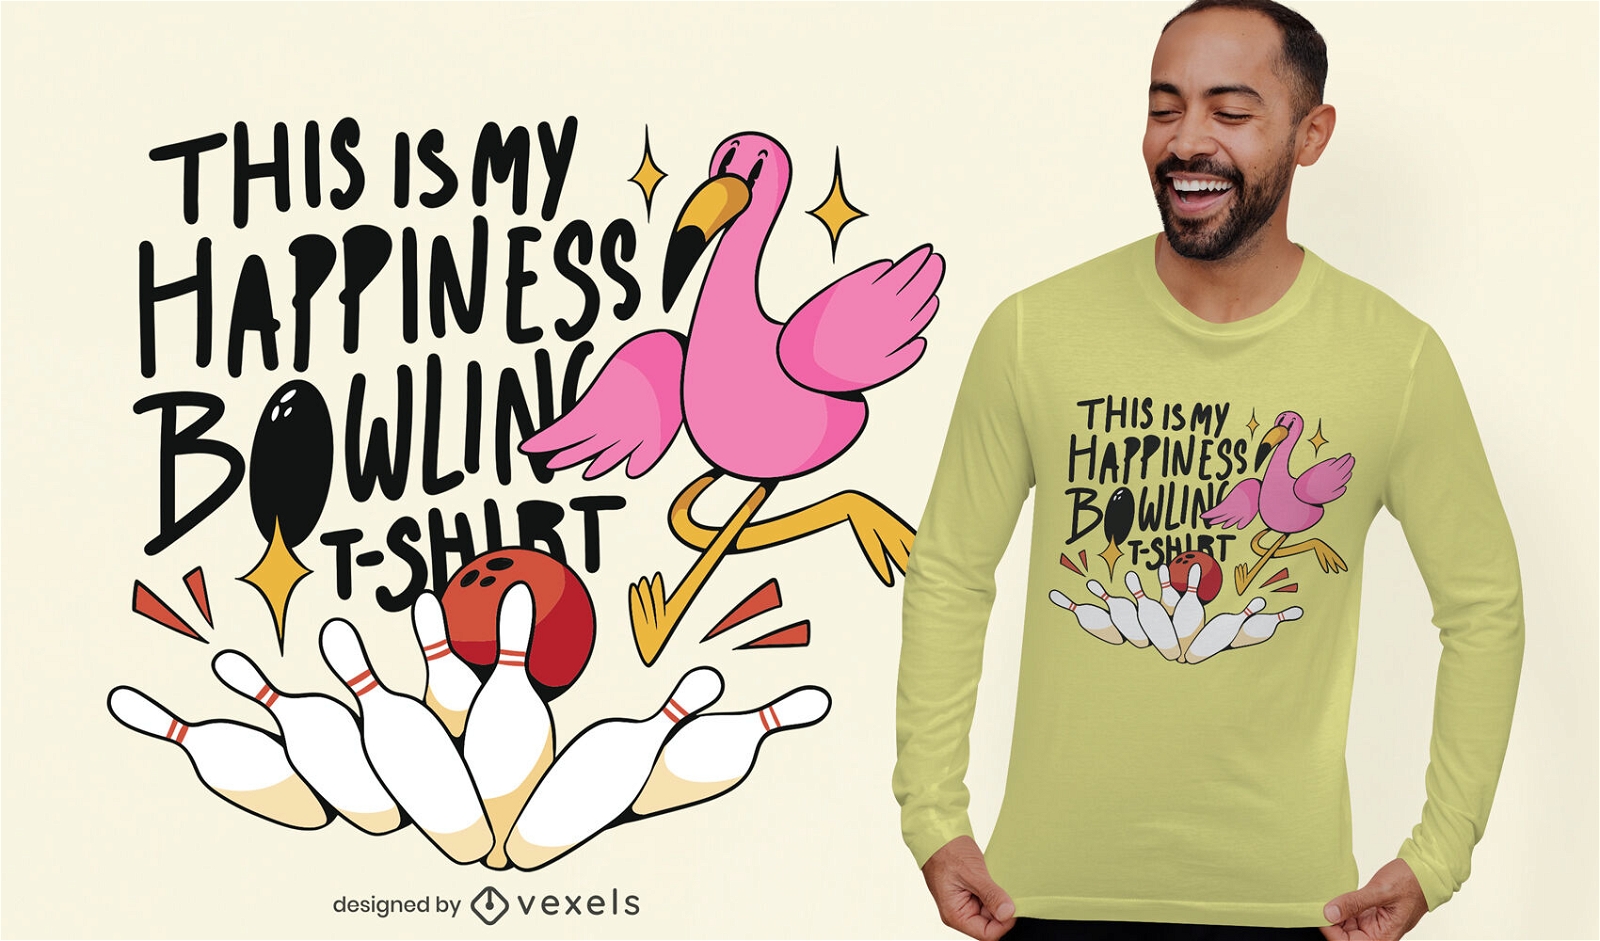 Flamingo bird playing bowling t-shirt design